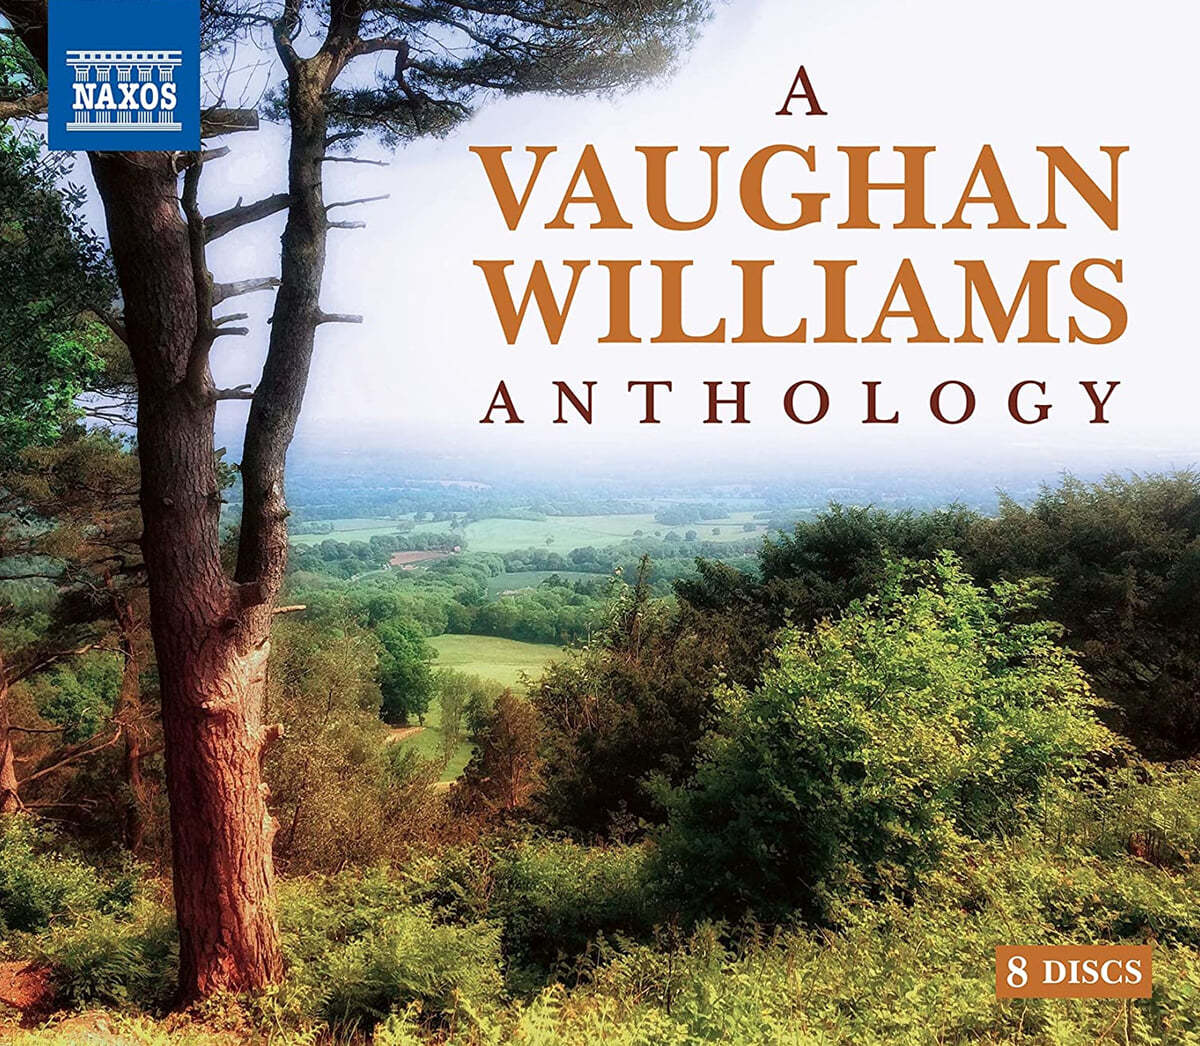 본 윌리엄스: 작품 모음집 (A Vaughan Williams Anthology)